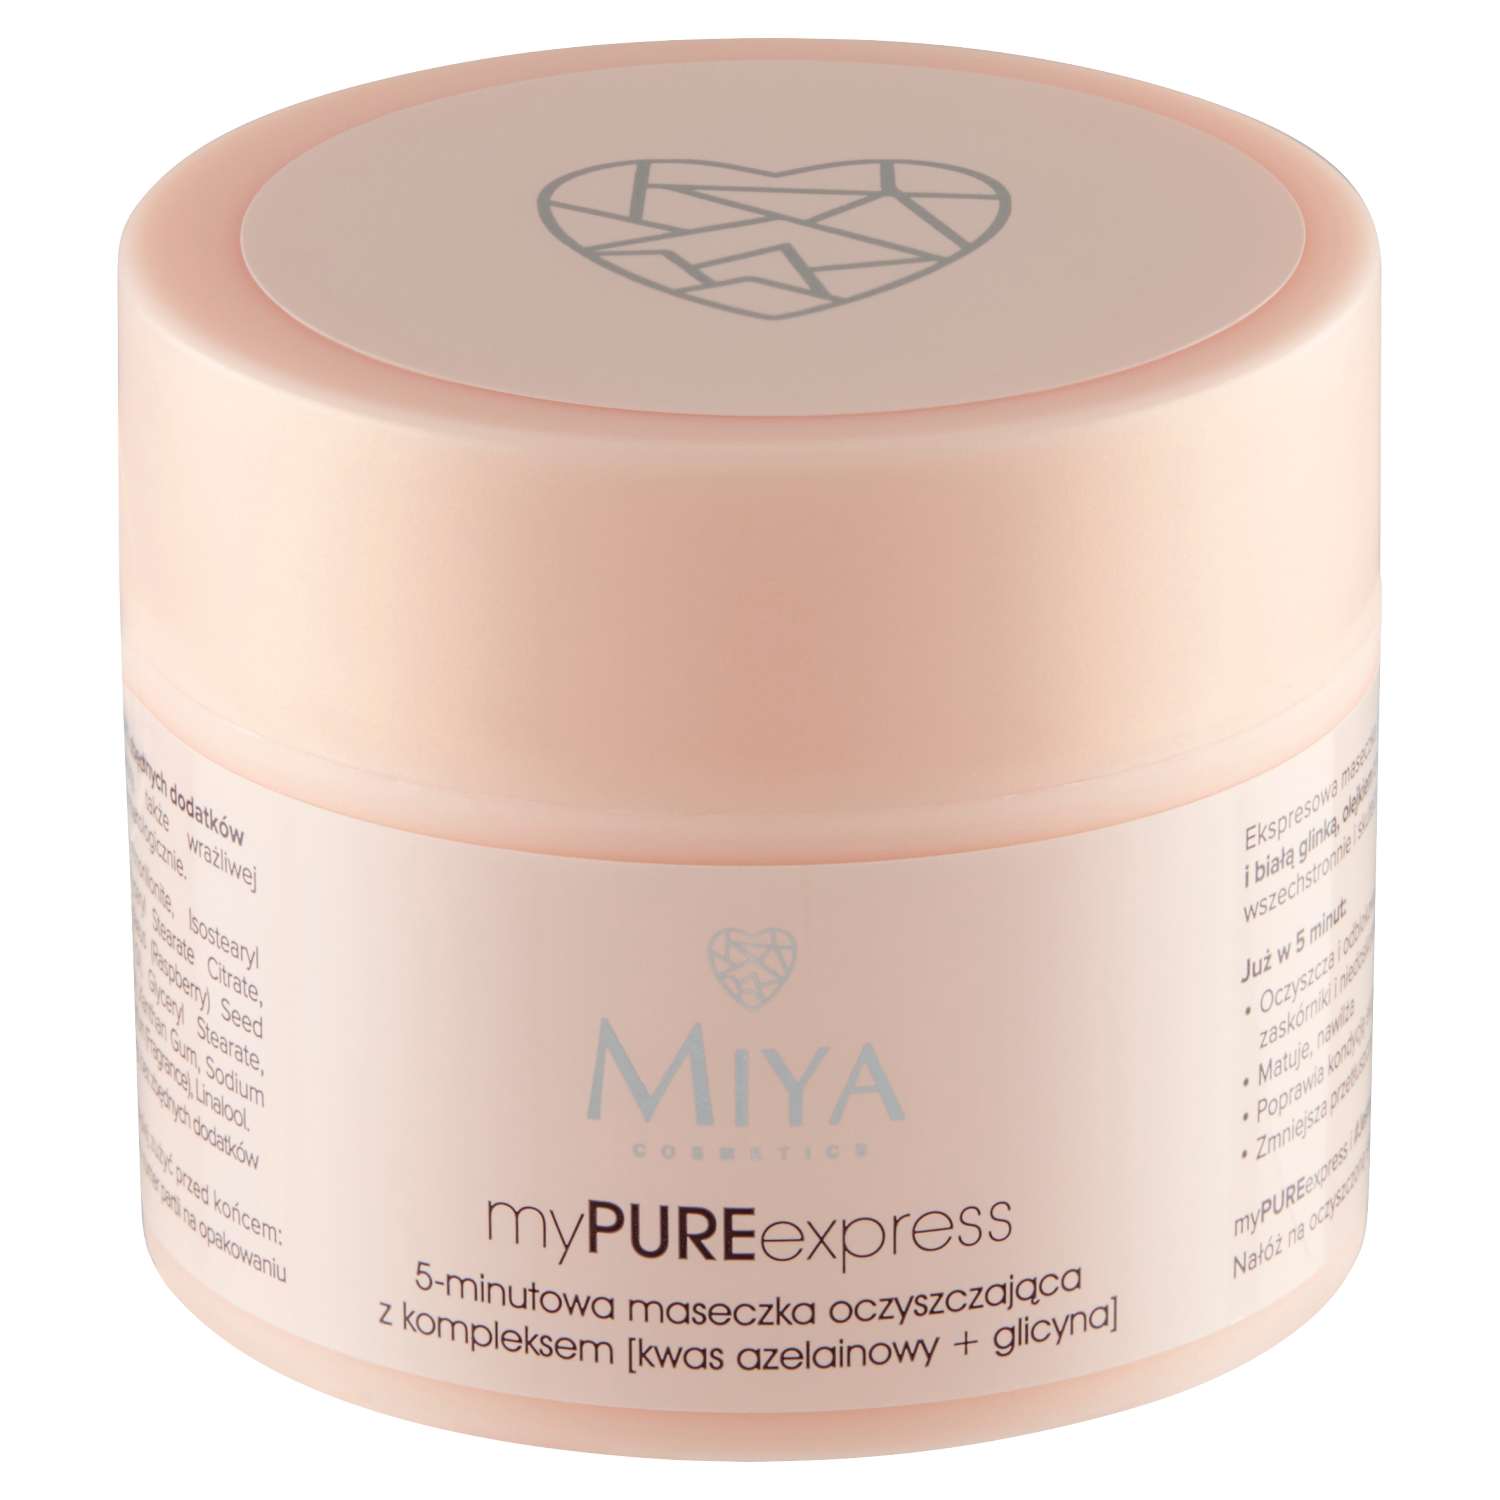 Miya Cosmetics myPUREexpress 5-minutowa maseczka oczyszczająca z kompleksem  z kwasem azelainowy i glicyną, 50 g | hebe.pl